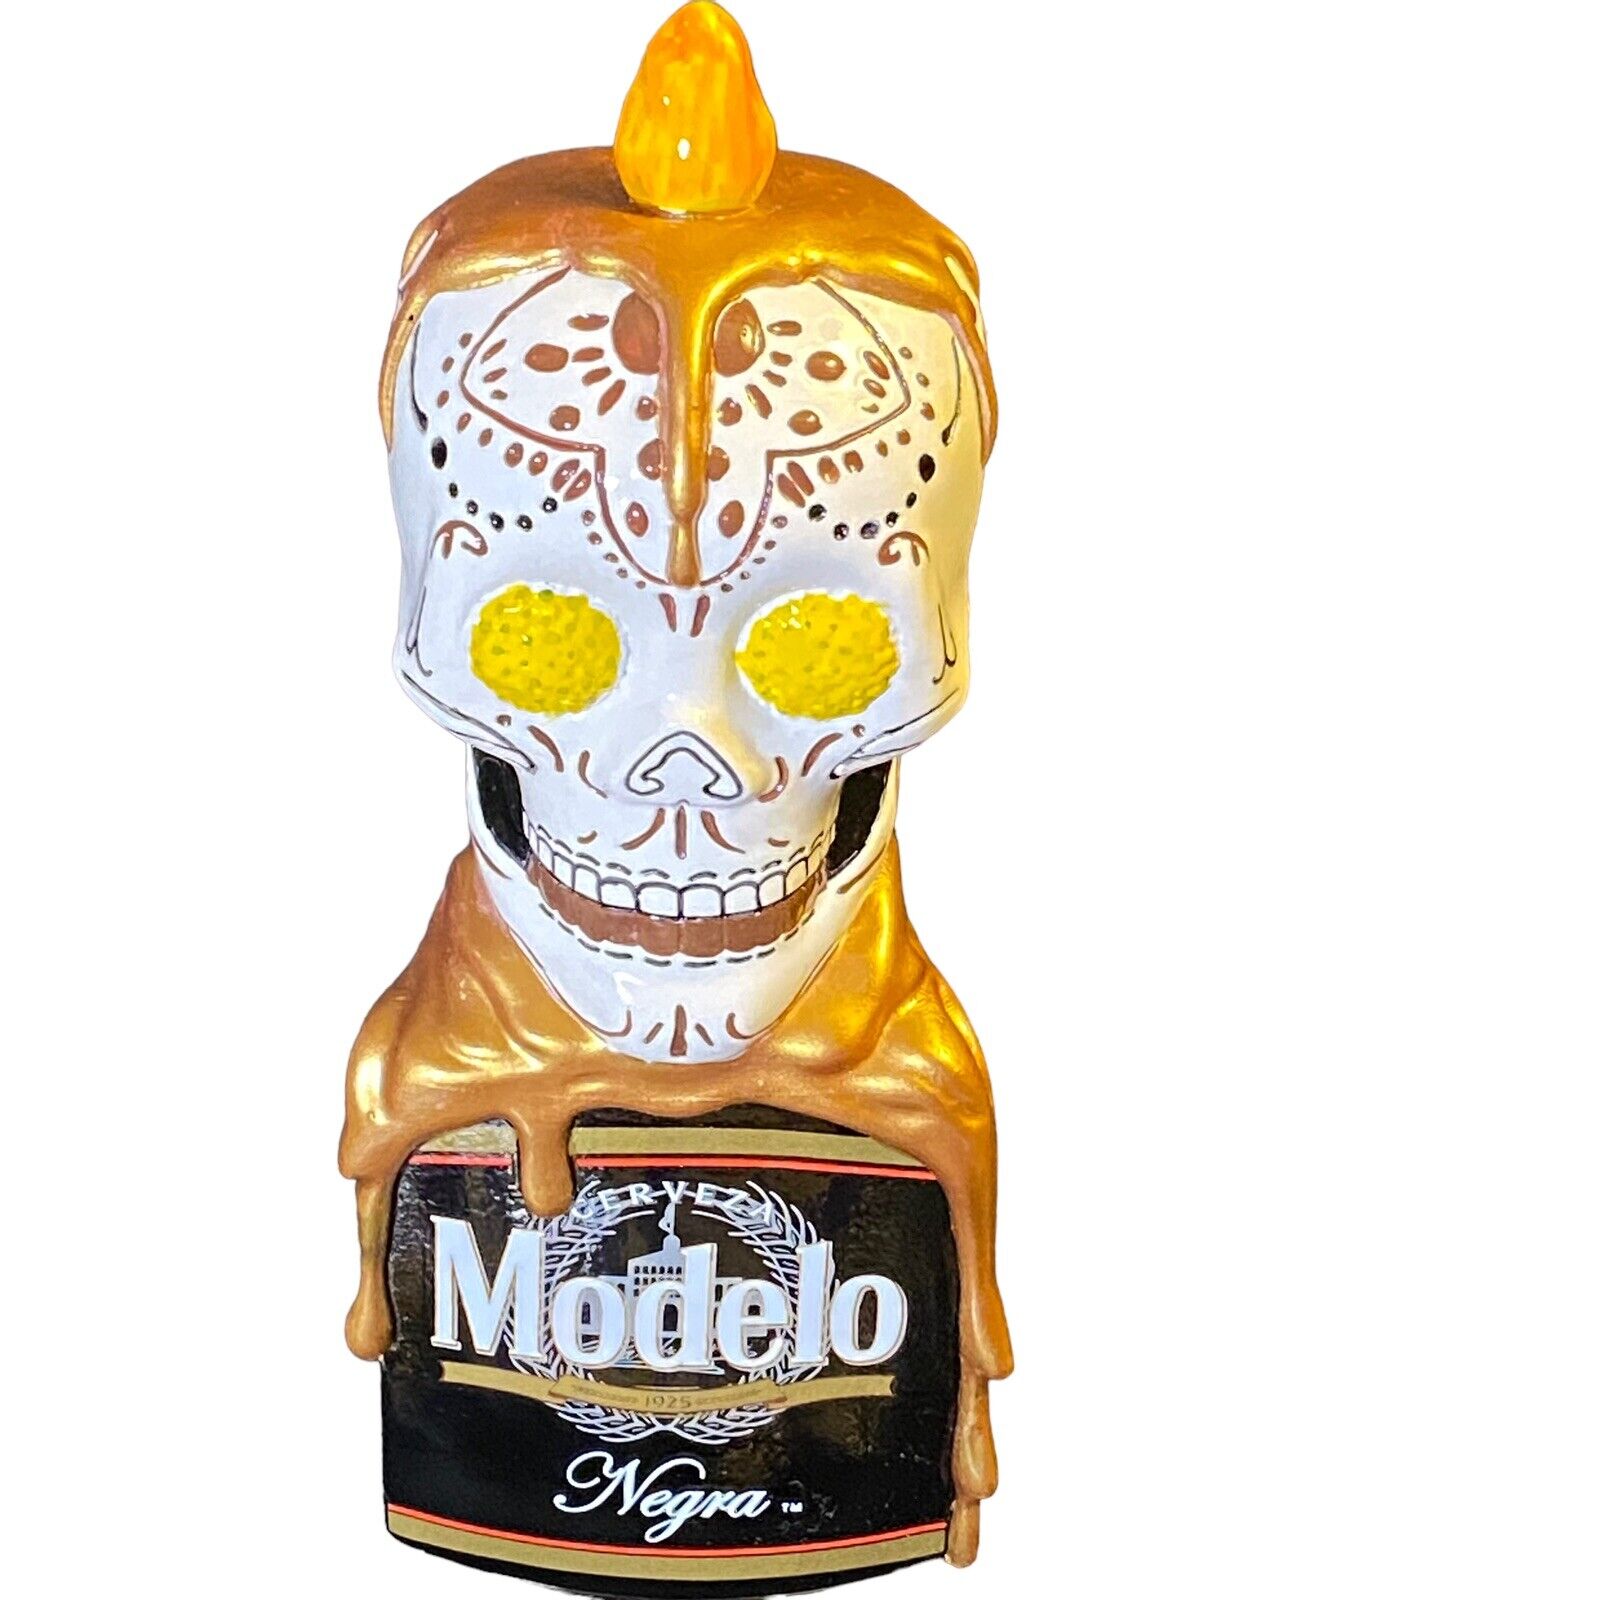 Negra Modelo Day Of The Dead Sugar Skull Beer Tap Handle Dia De Los Muertos New